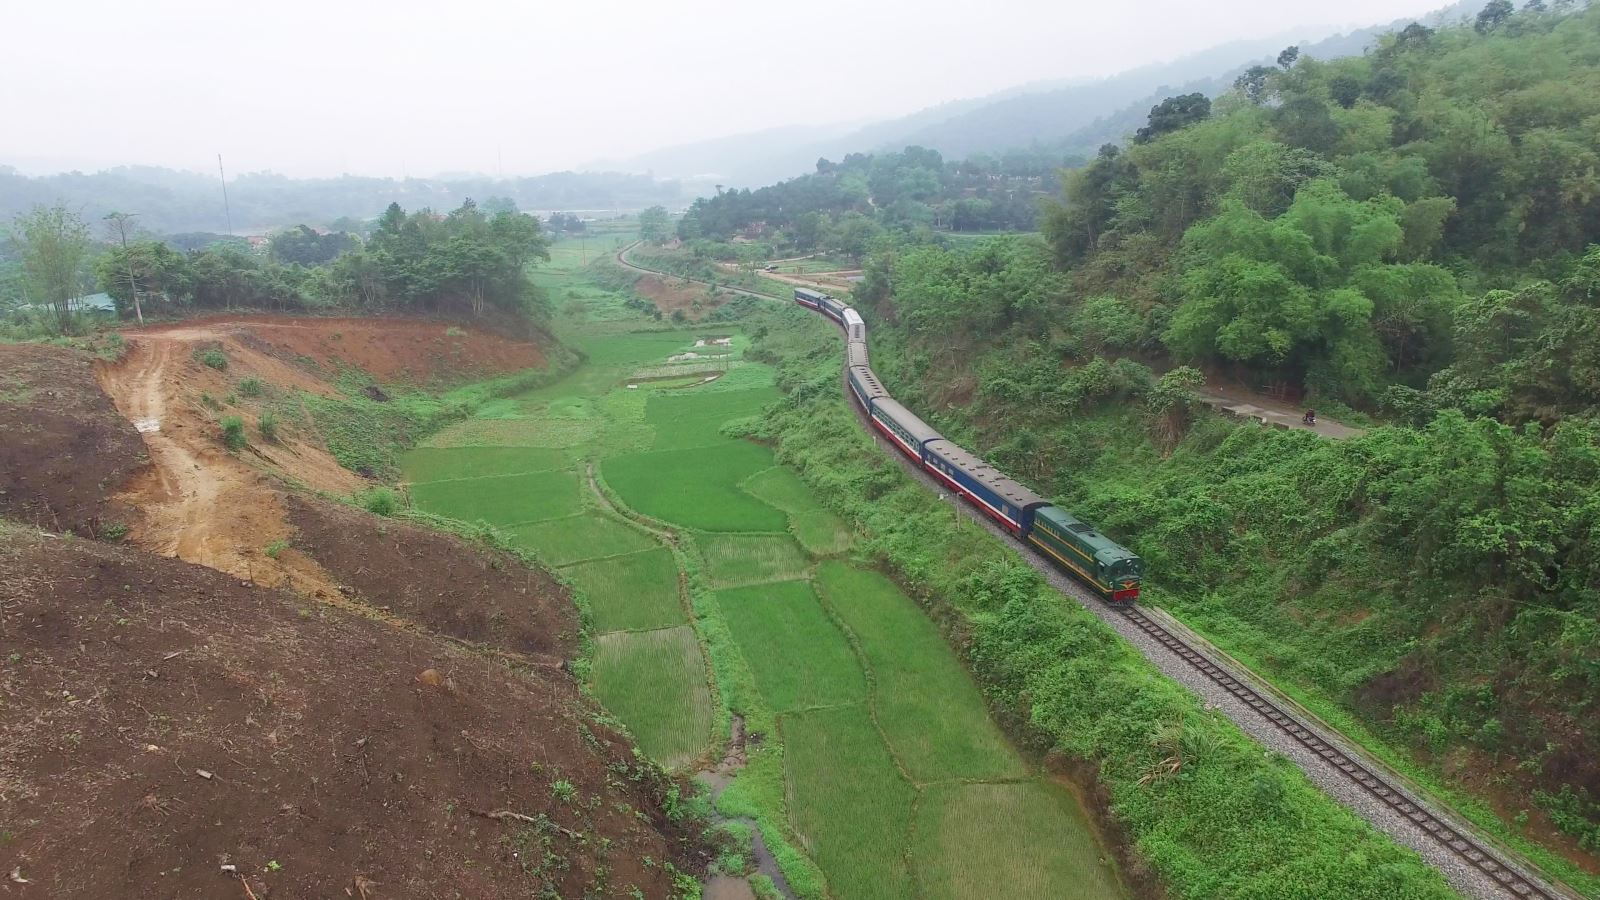 Viêc triển khai tuyến đường sắt khổ 1.435 mm đoạn Lào Cai - Hà Nội - Hải Phòng hiện mới dừng ở việc nghiên cứu lập quy hoạch.